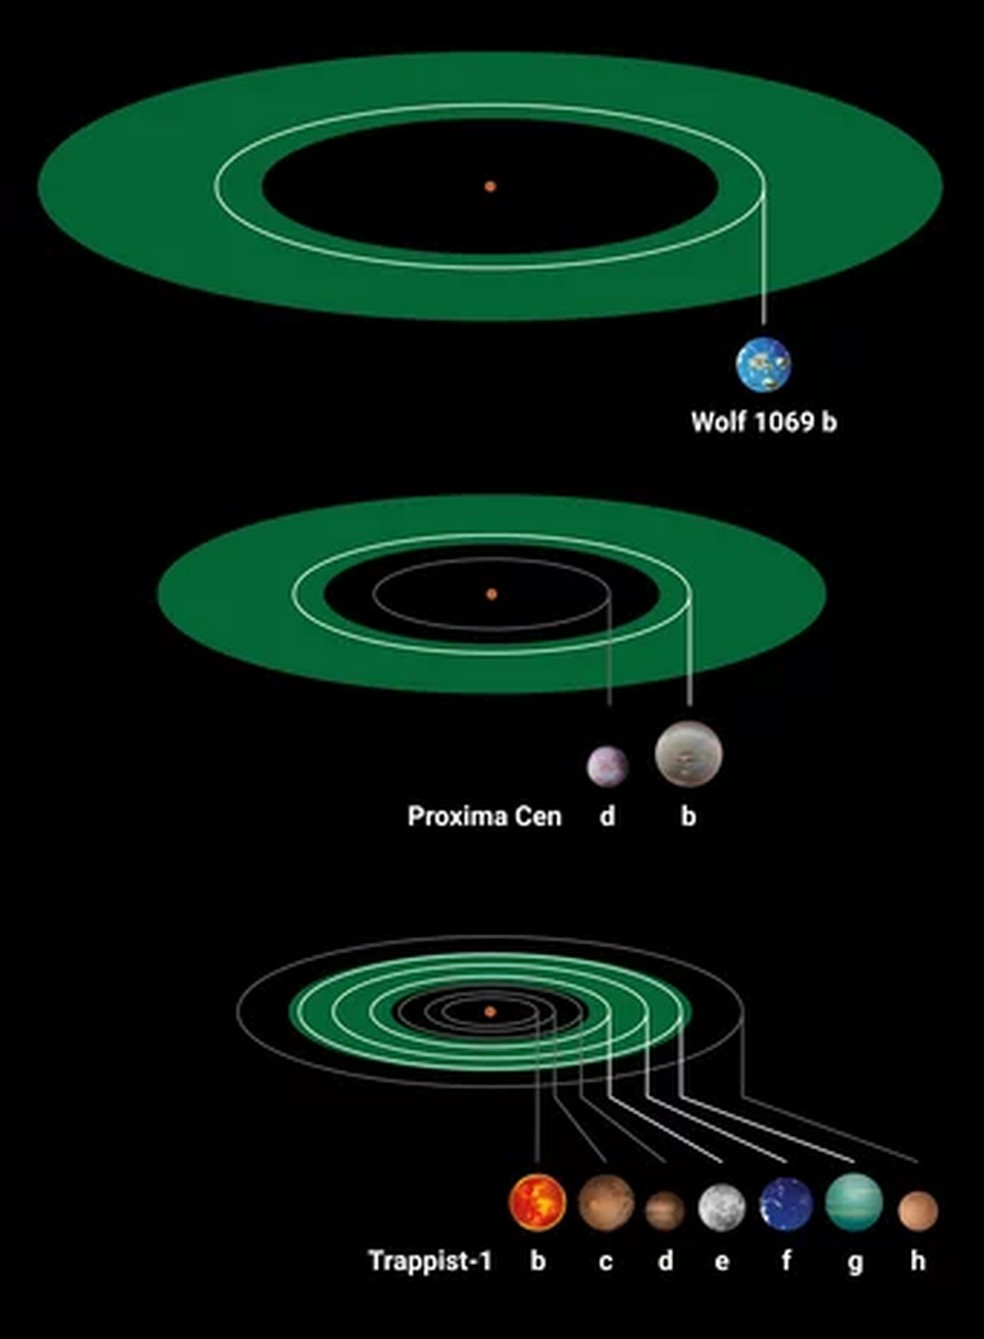 Ilustração que compara três sistemas exoplanetários de estrelas anãs vermelhas que hospedam planetas com a massa da Terra — Foto: MPIA departamento gráfico/J. neidel